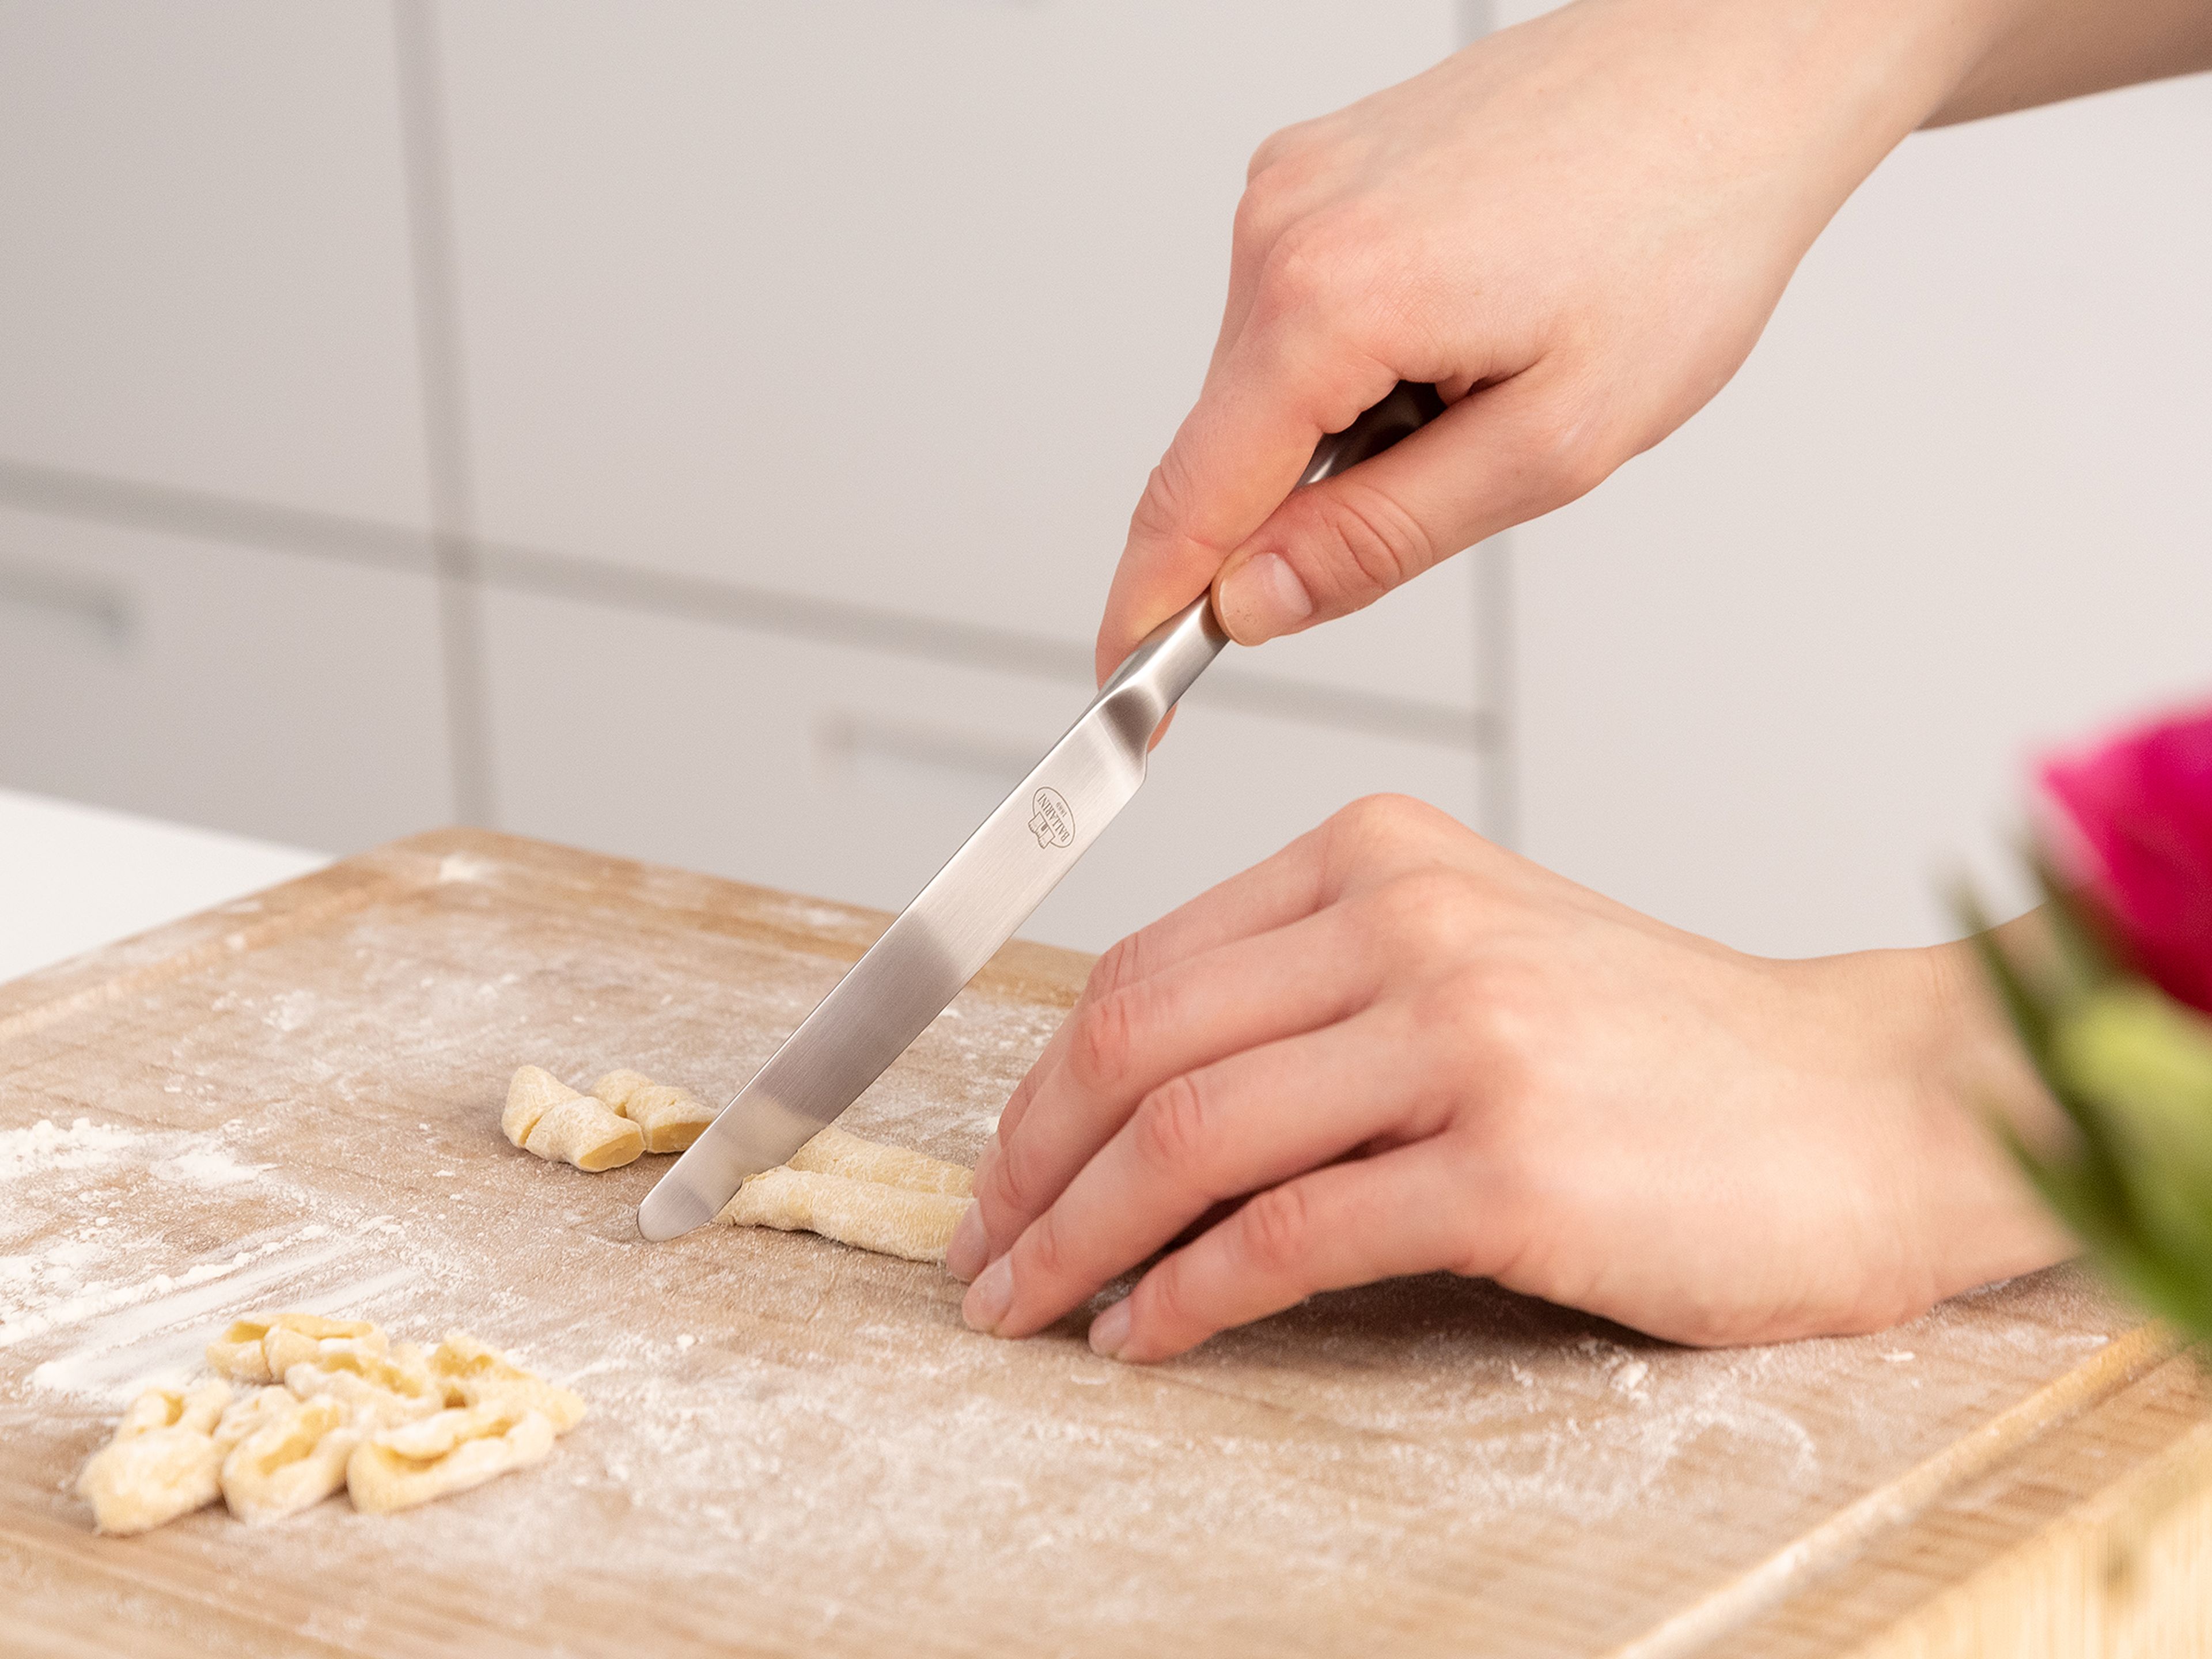 Für Cavatelli den Pastateig in dünne Stränge rollen und dann mit dem Messer/Teigschaber in kleine 0,5 cm dicke Stücke schneiden. Jedes Stück mit den Fingerkuppen eindrücken, so dass kleine, runde Plättchen entstehen.